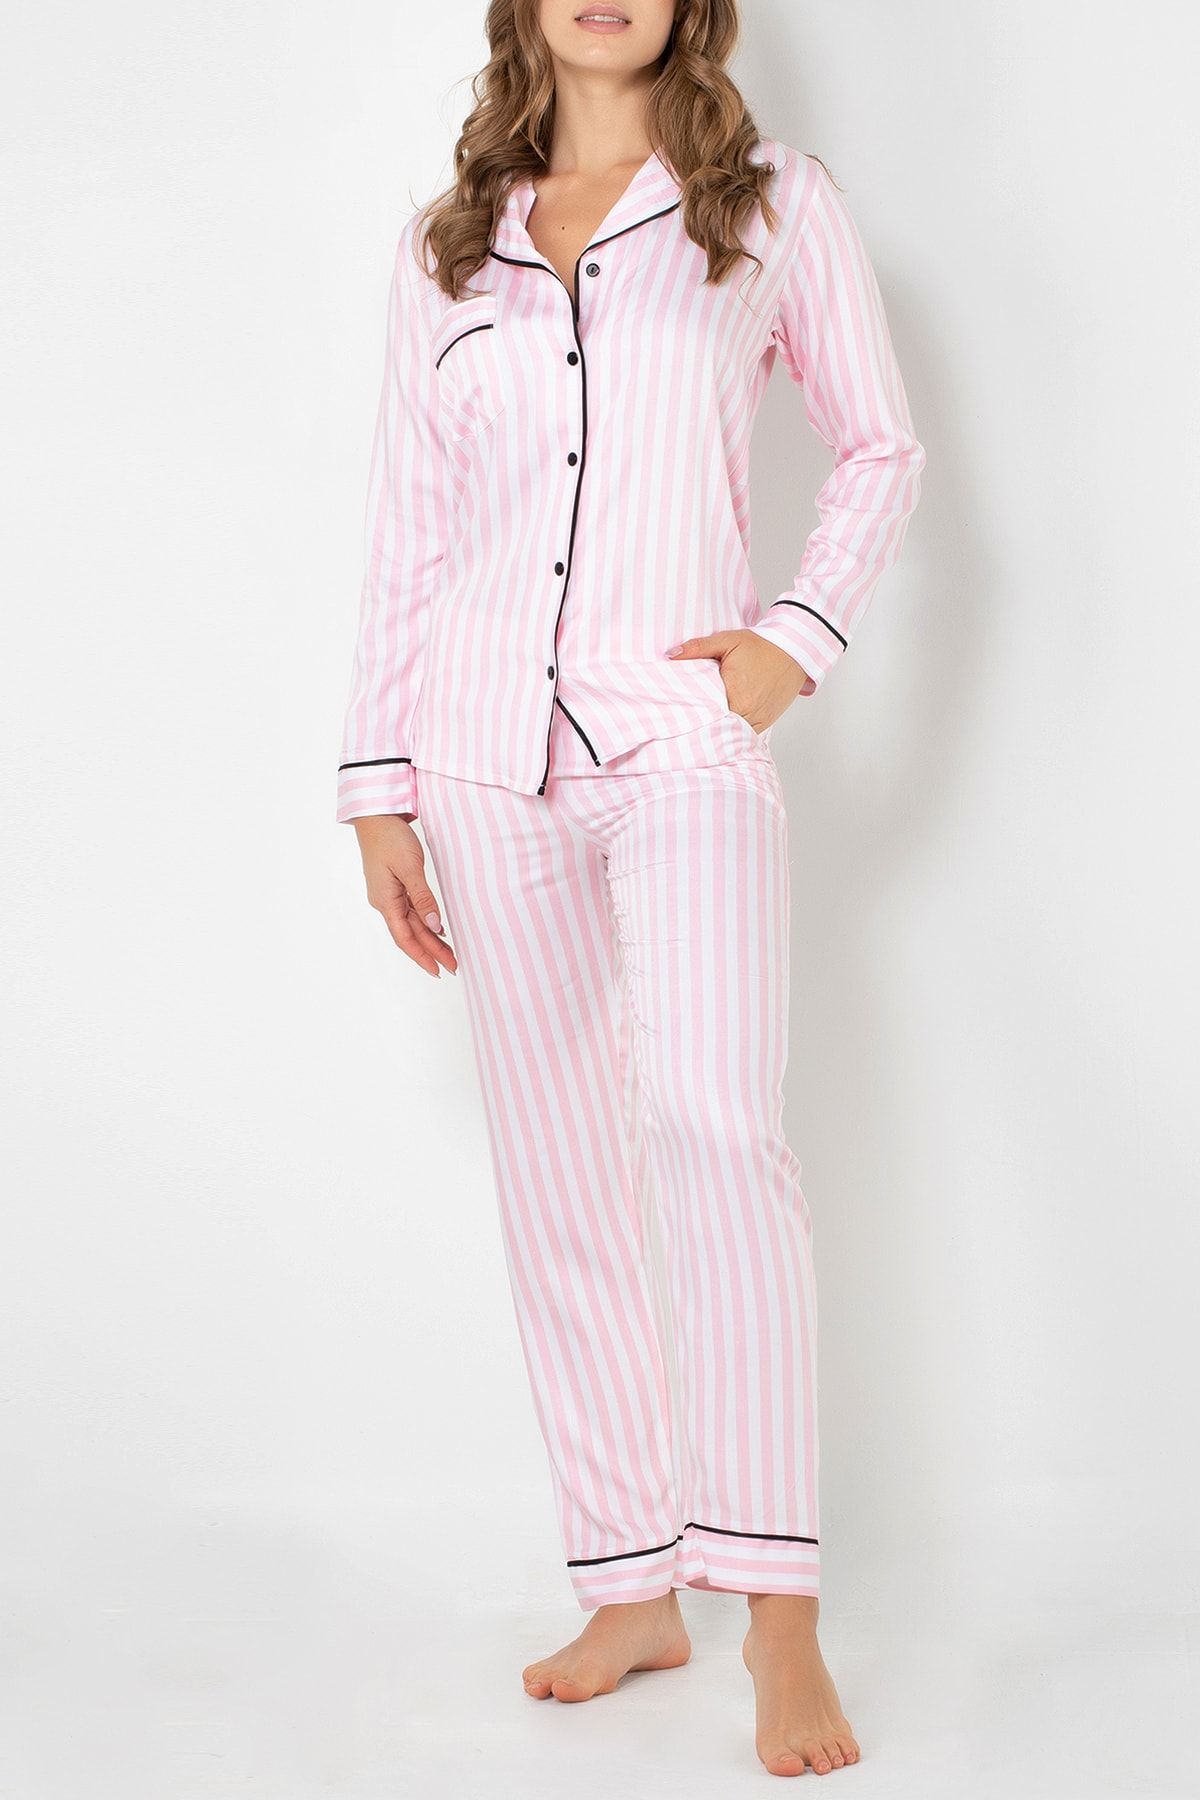 DoReMi Victoria Uzun Kollu Kadın Pijama Takımı